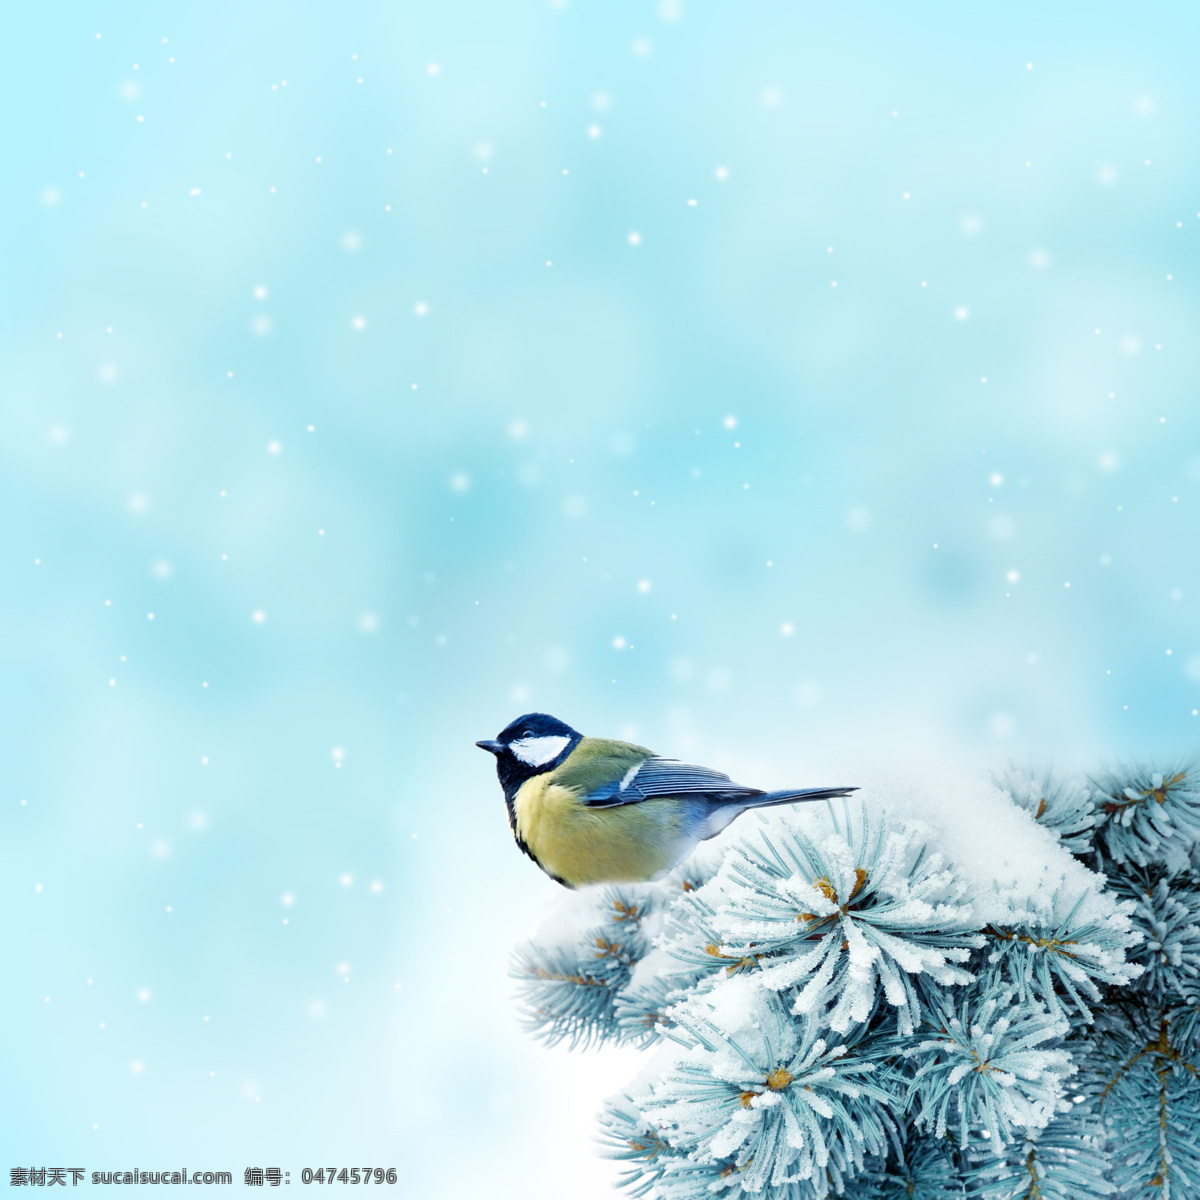 唯美意境 冬季 冰雪世界 雪地 雪花 小鸟 飞鸟